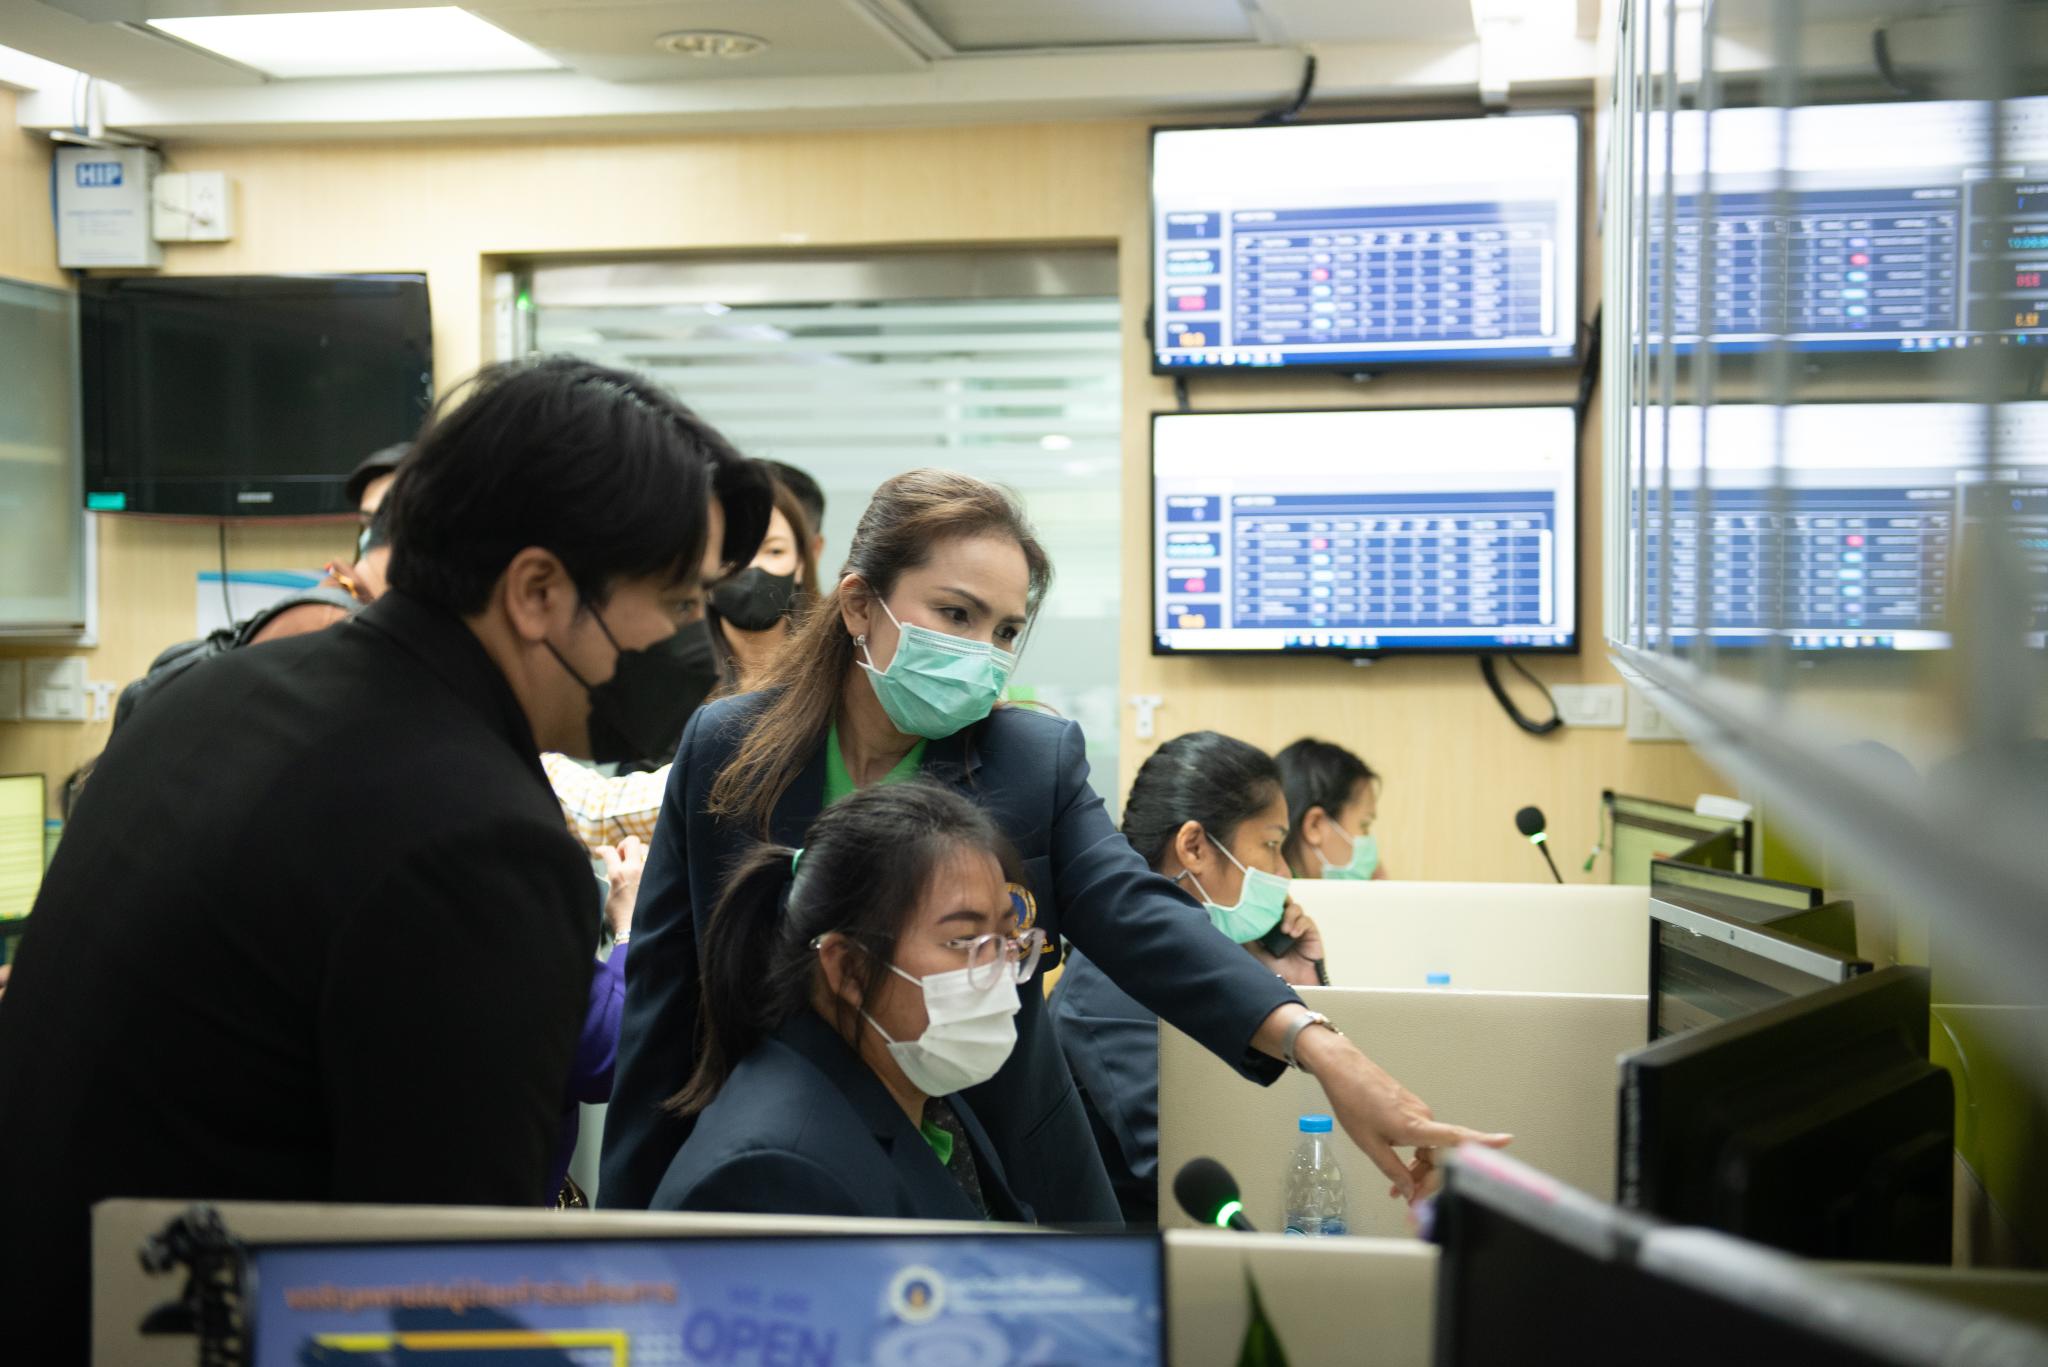 งานสื่อสารองค์กร คณะแพทยศาสตร์โรงพยาบาลรามาธิบดี มหาวิทยาลัยมหิดล ต้อนรับทีมศึกษาดูงานจาก สำนักสารนิเทศและสื่อสารองค์กร กลุ่มงานกลยุทธ์องค์กร สภากาชาดไทย และฝ่ายสื่อสารองค์กร โรงพยาบาลจุฬาลงกรณ์ สภากาชาดไทย ศึกษาดูงานด้าน Call Center และหน่วยติดต่อสอบถาม